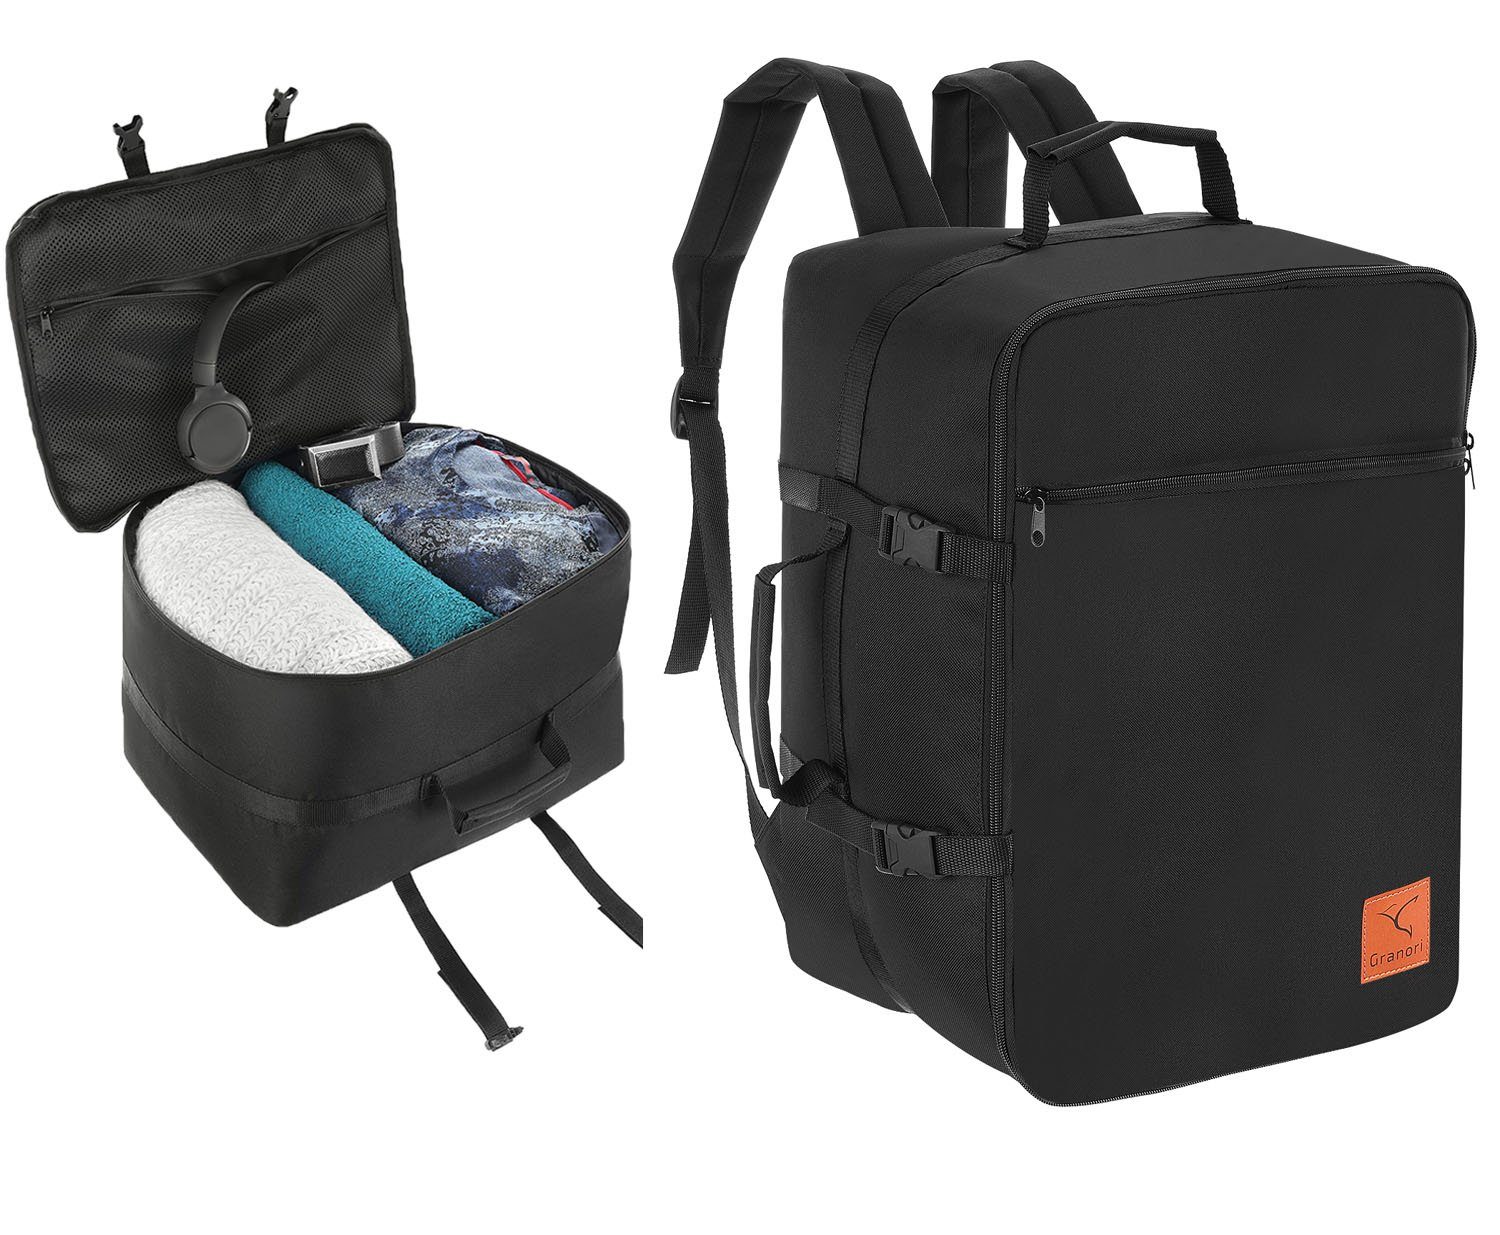 Granori Kofferrucksack Dreampack Pro 40x30x25 / 40x30x20 cm – Handgepäck- Rucksack (Flexsize), Platzwunder mit optimaler Konstruktion zum maximalen  Bepacken